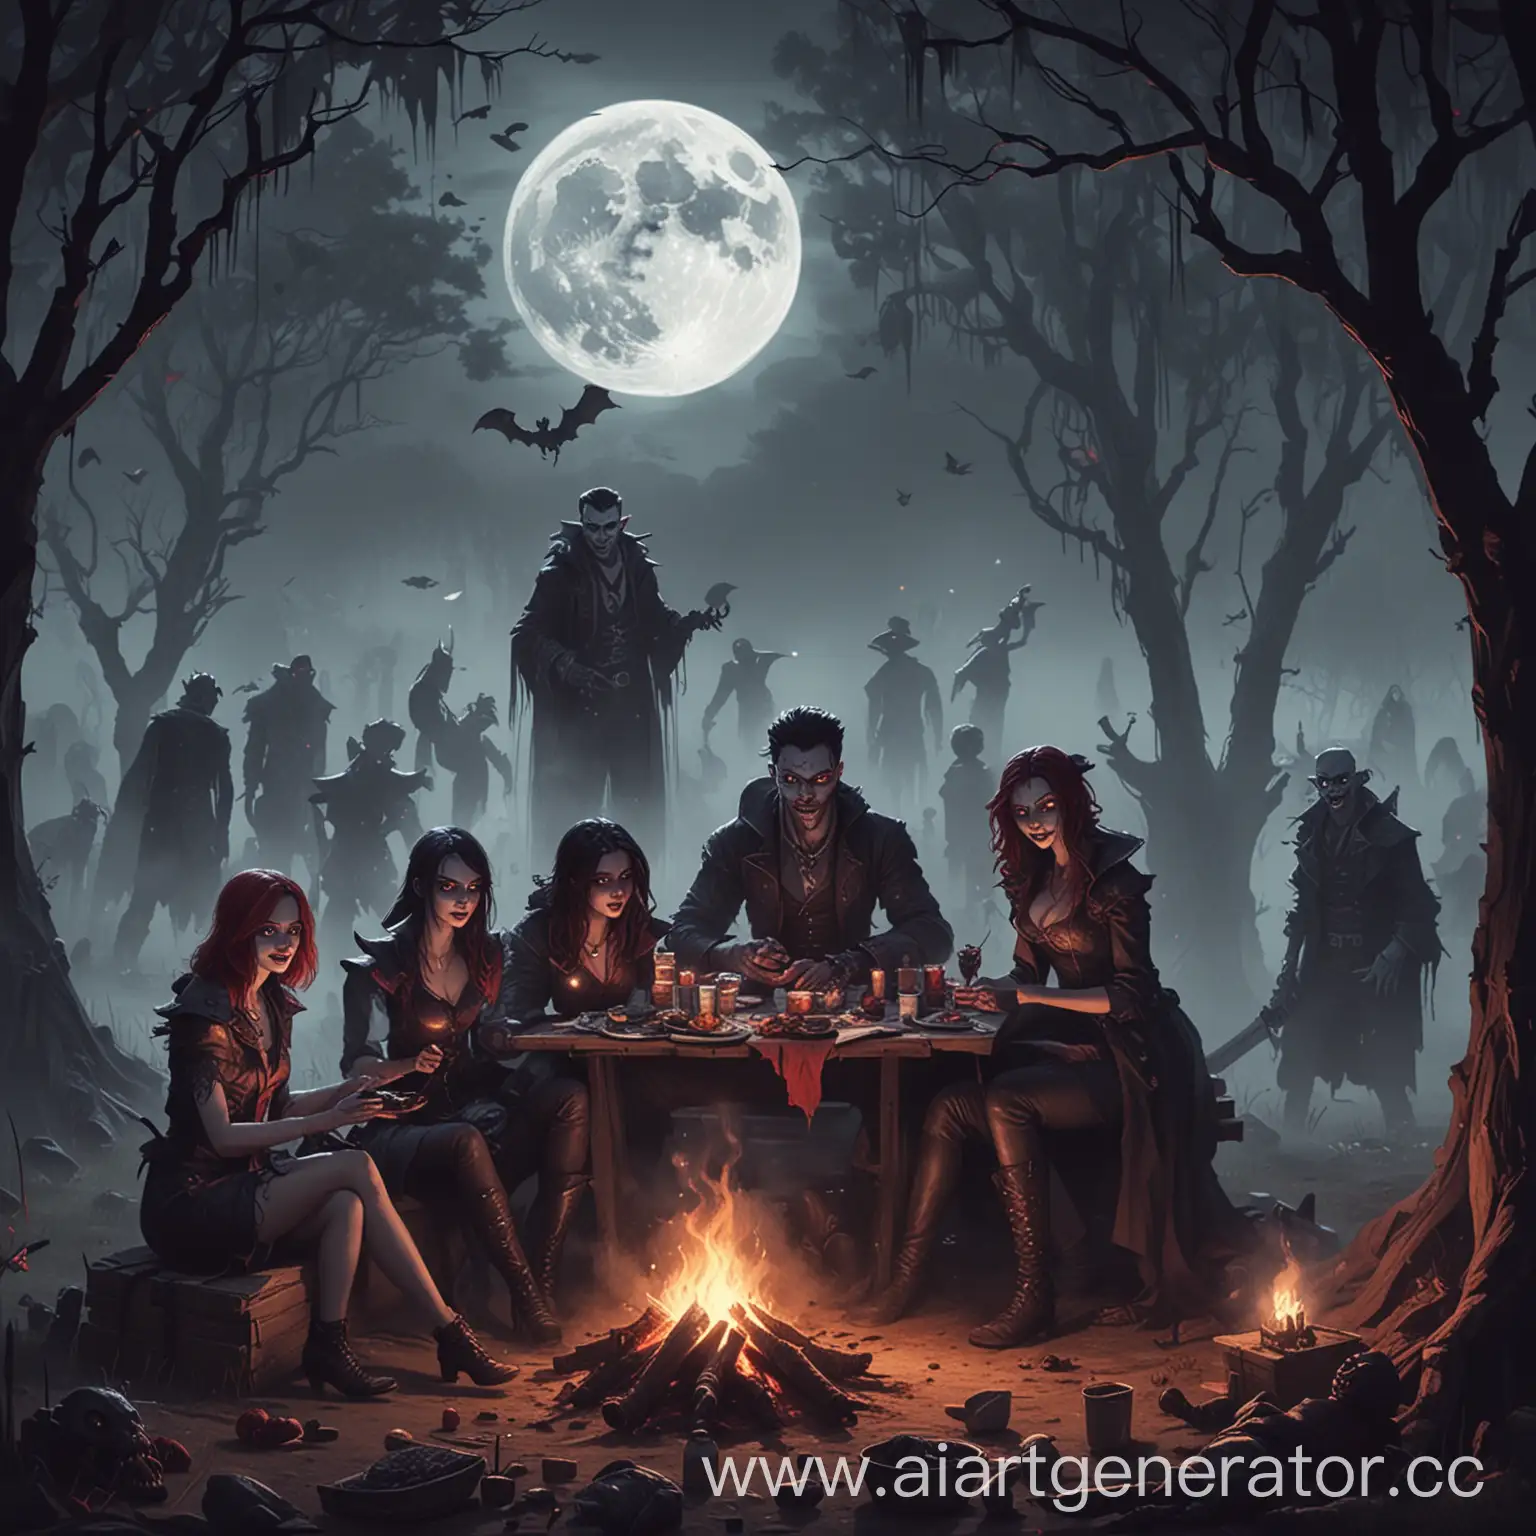 Счастливые вампиры на пикнике, костёр, туман, луна, вокруг испуганные маленькие монстры. В стиле игры Наследие Вампиров